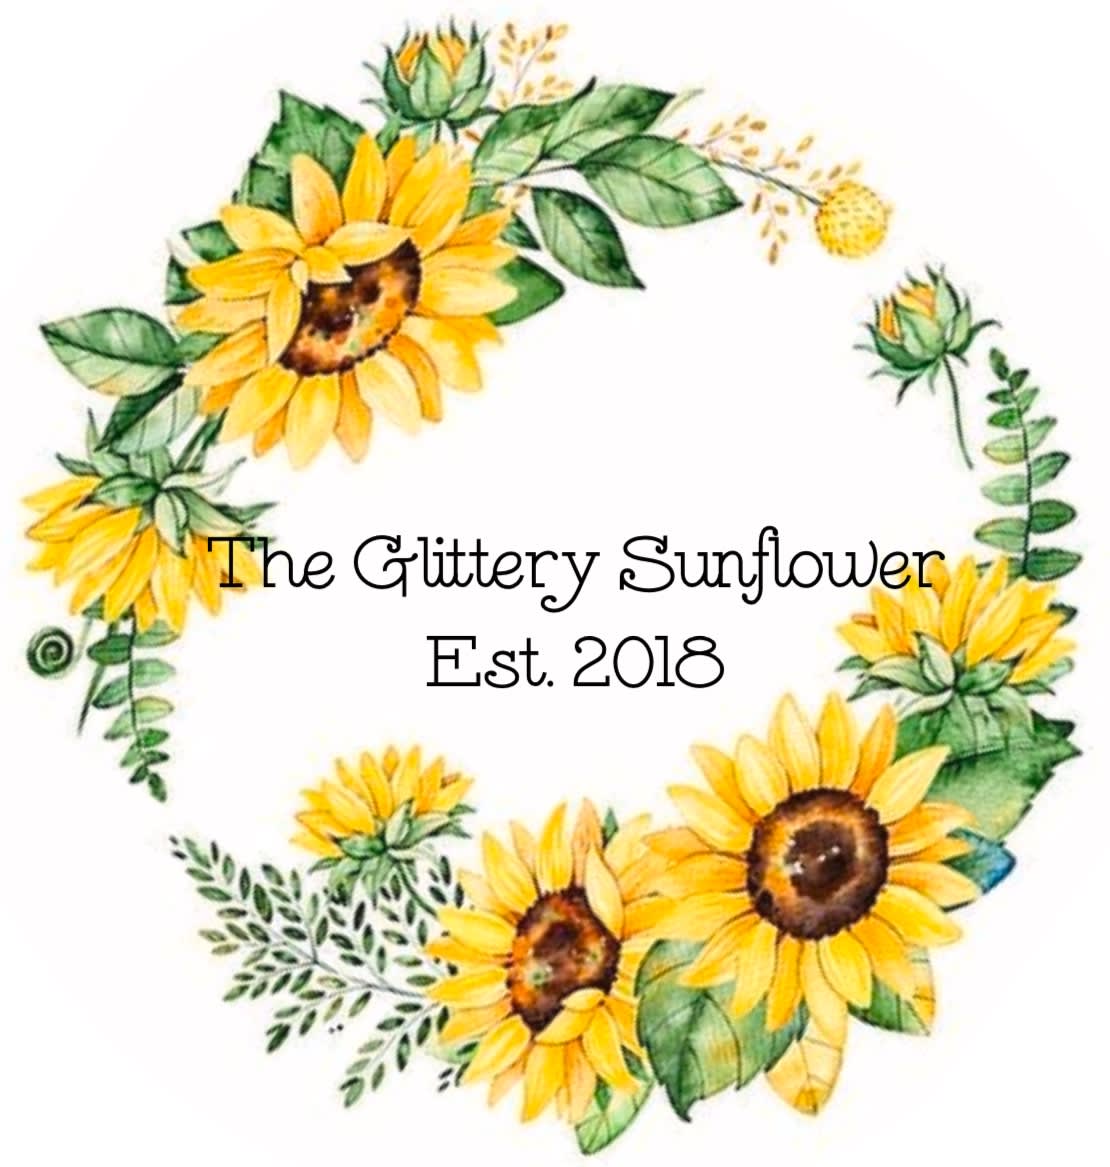 The Glittery Sunflower